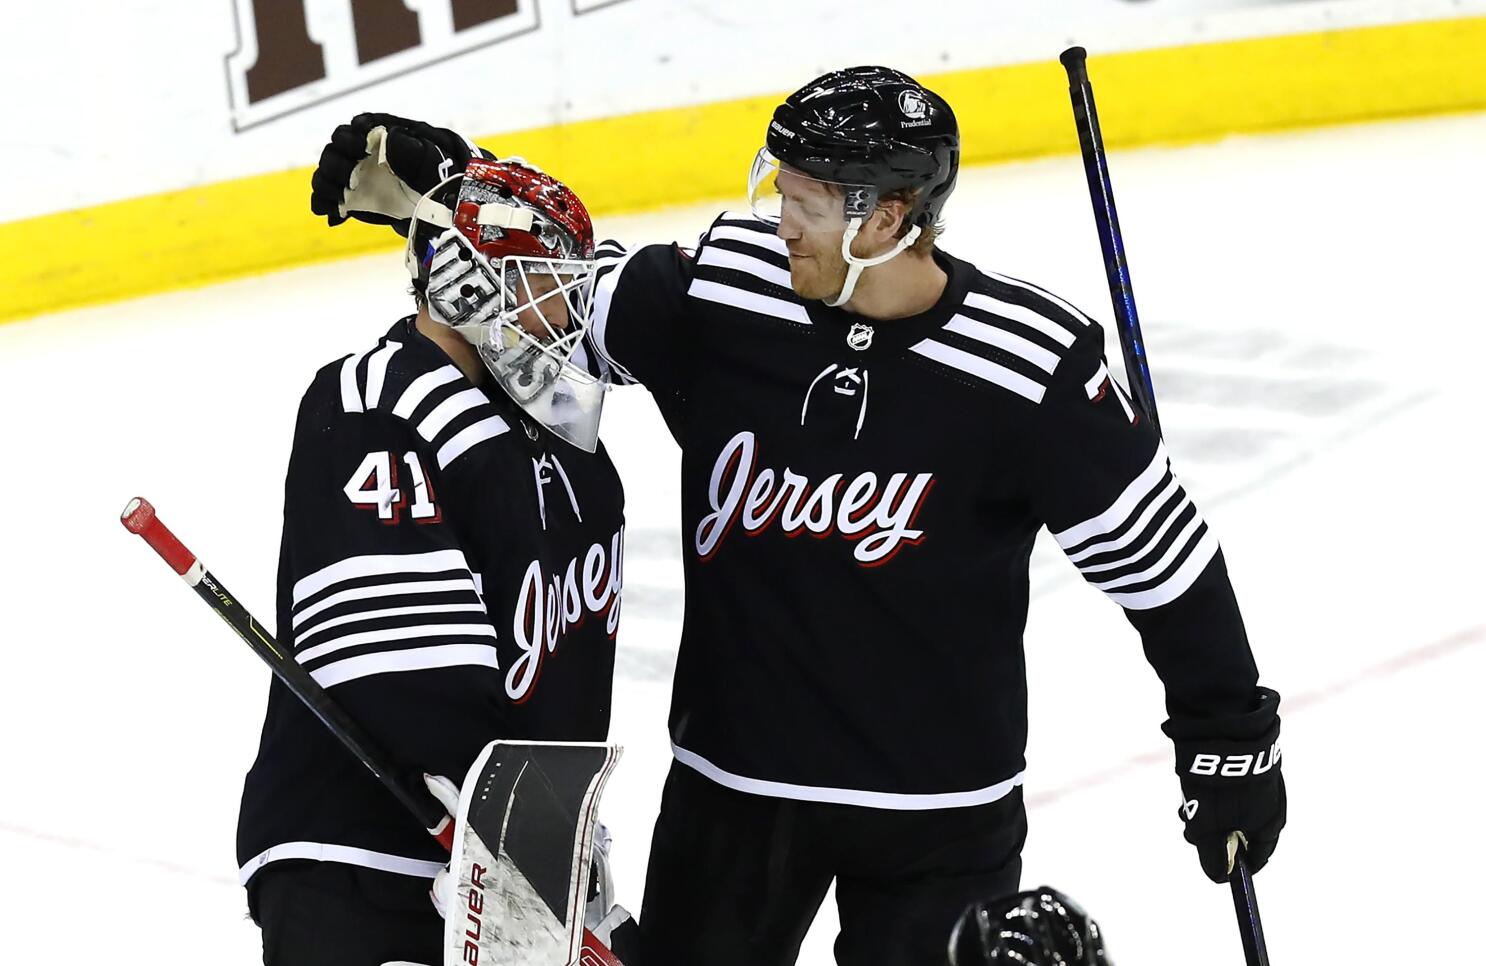 Vitek Vanecek Earns First AHL Win in Last Game of Season